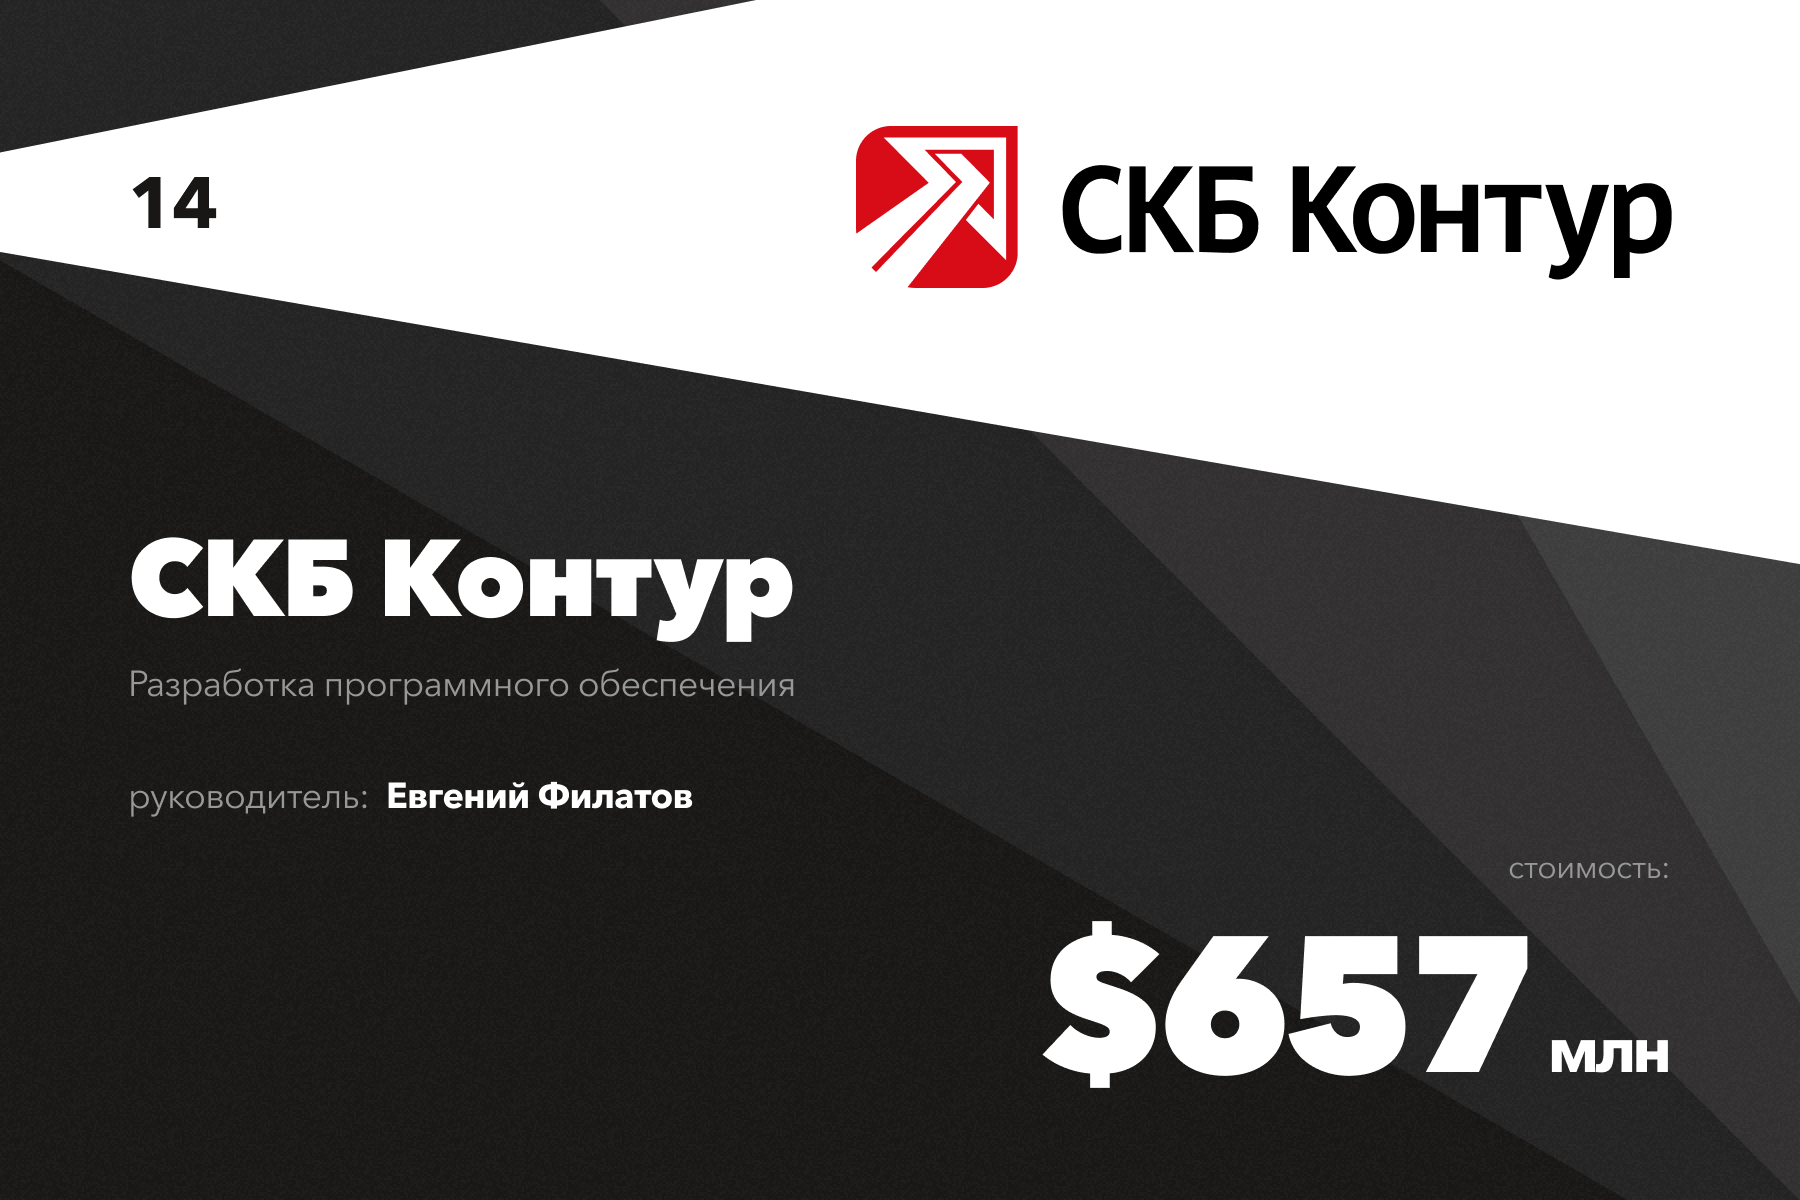 Скб контур отзывы. 30 Самых дорогих компаний рунета. «СКБ контур» вошел в десятку самых дорогих интернет-компаний России.